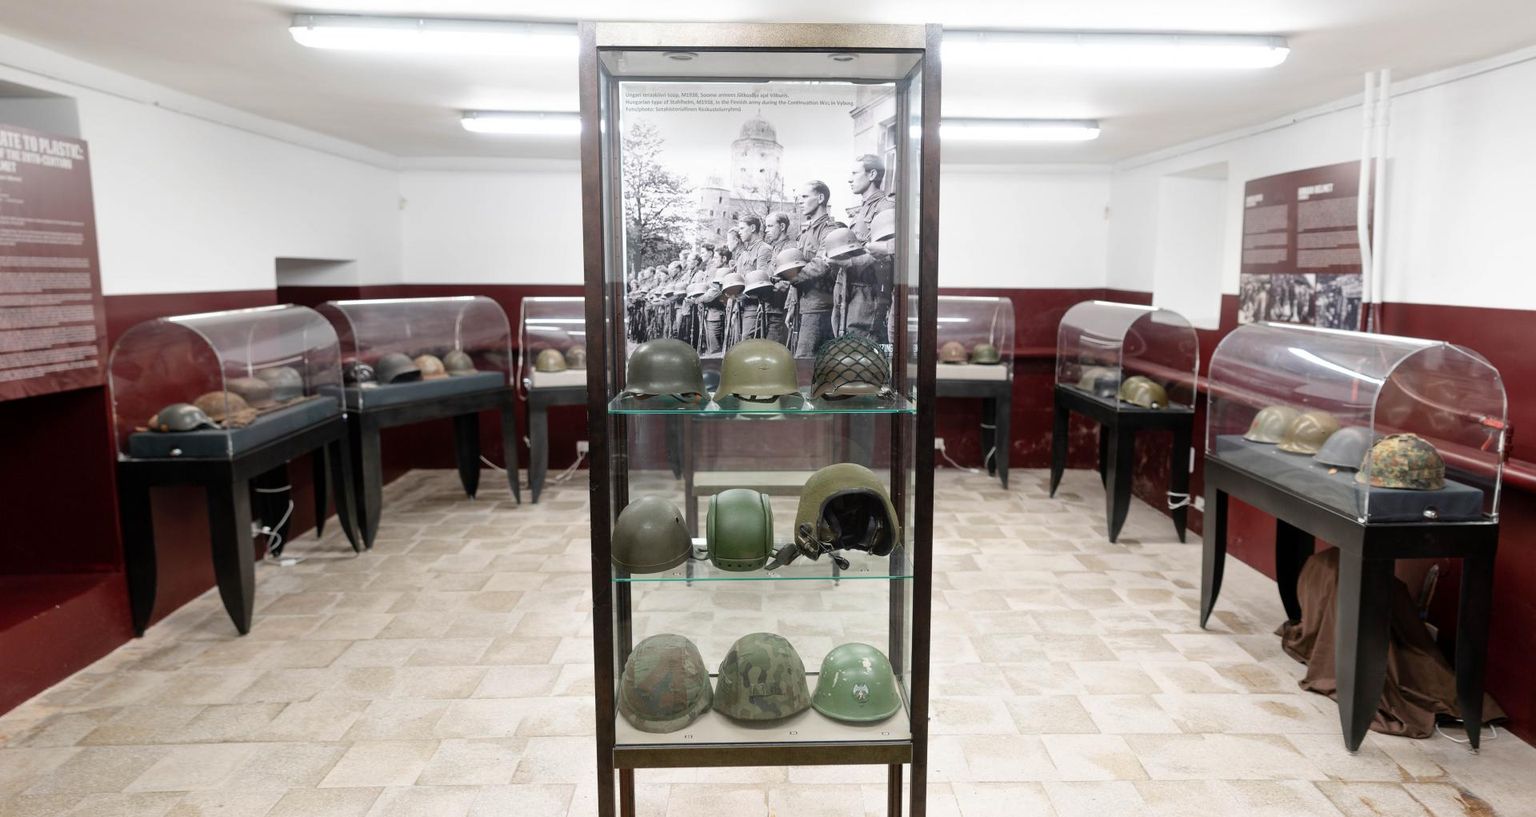 KGB kongide muuseumis kiivirnäitus, kus on 50 kiivrit pillide parandaja ja kaitseliitlase Aare Nõmme erakogust.